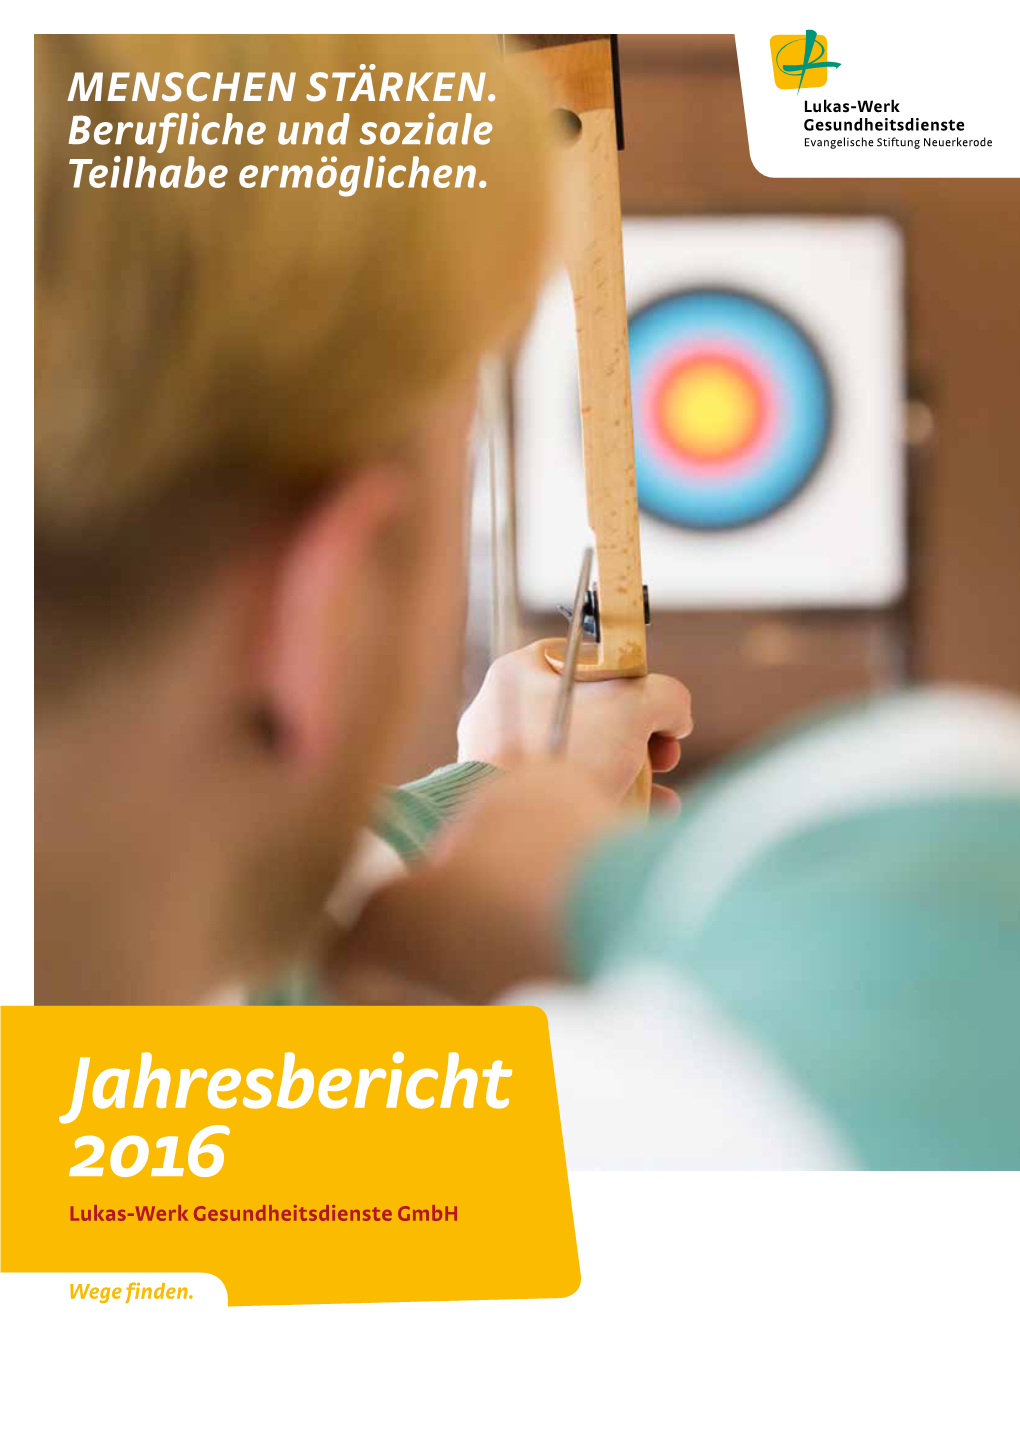 Jahresbericht 2016 Lukas-Werk Gesundheitsdienste Gmbh